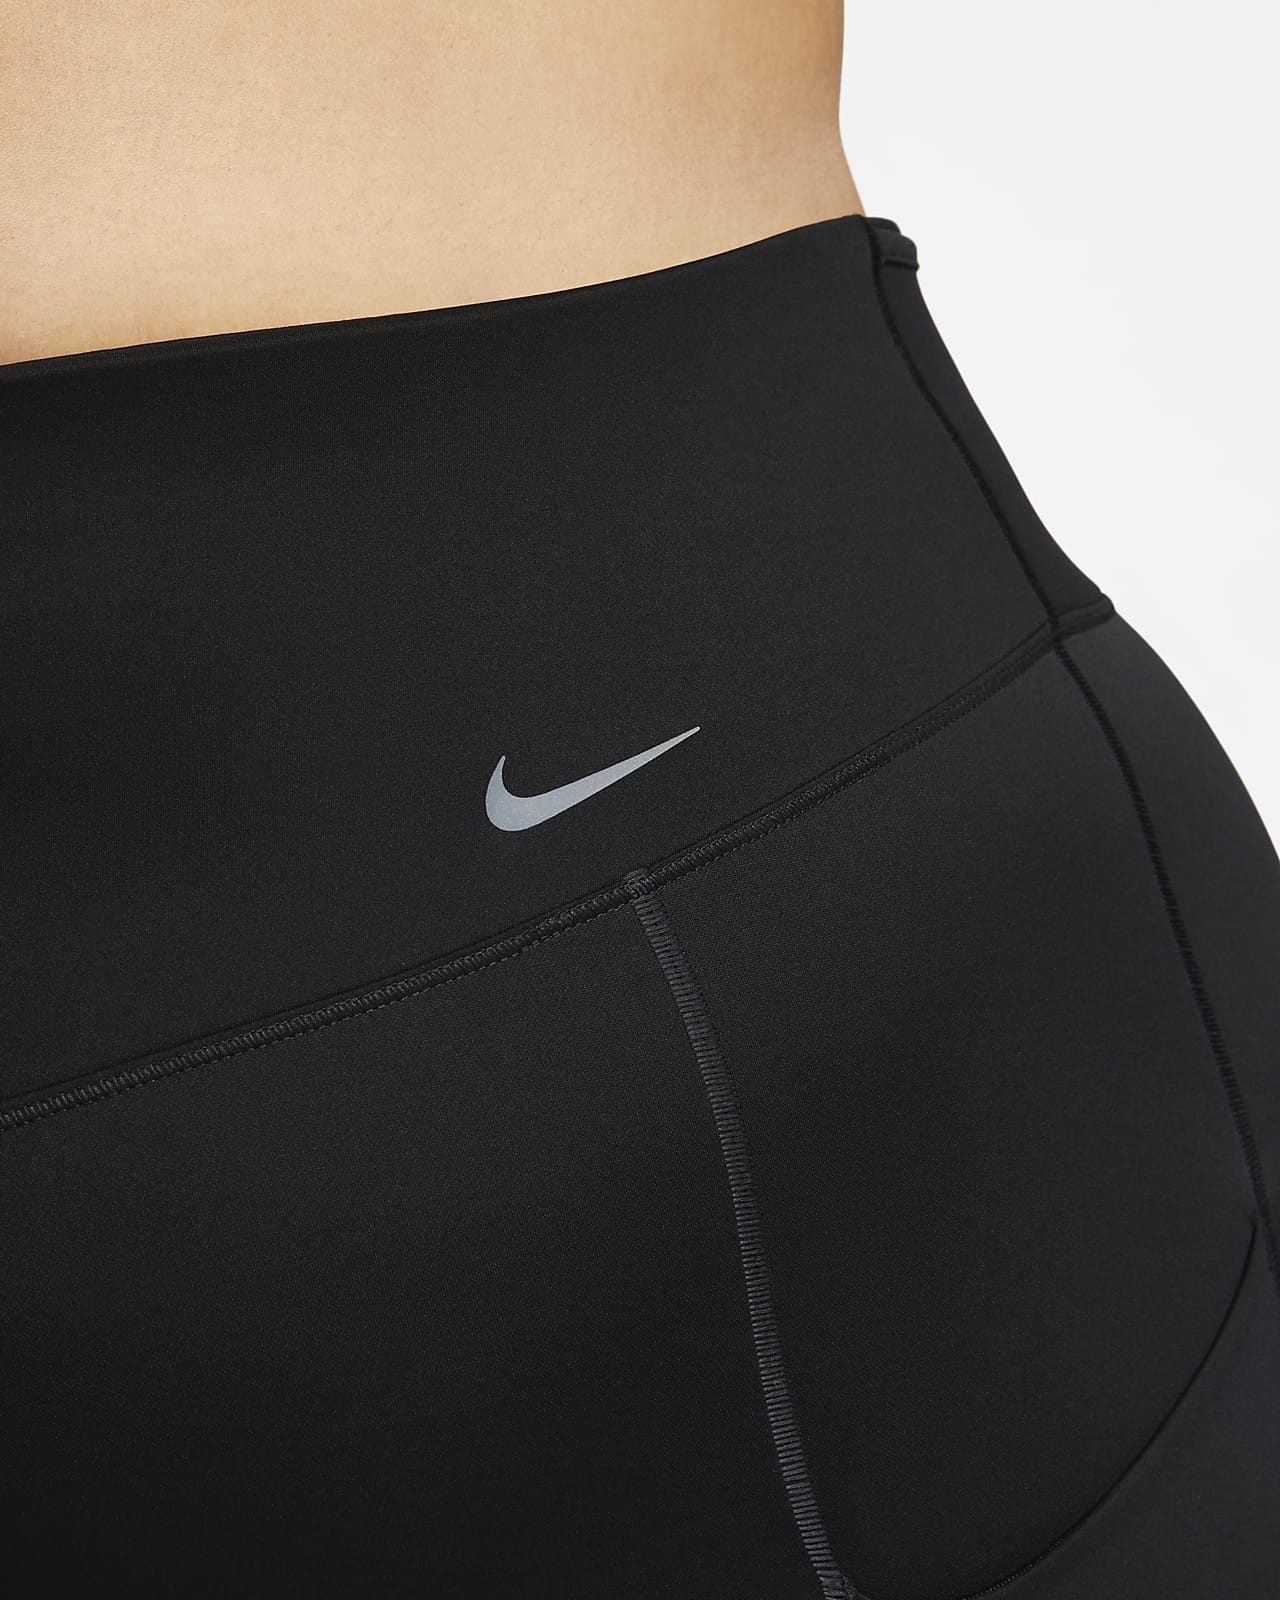 Nike Go Women's Firm-Support High-Waisted Full-Length Leggings